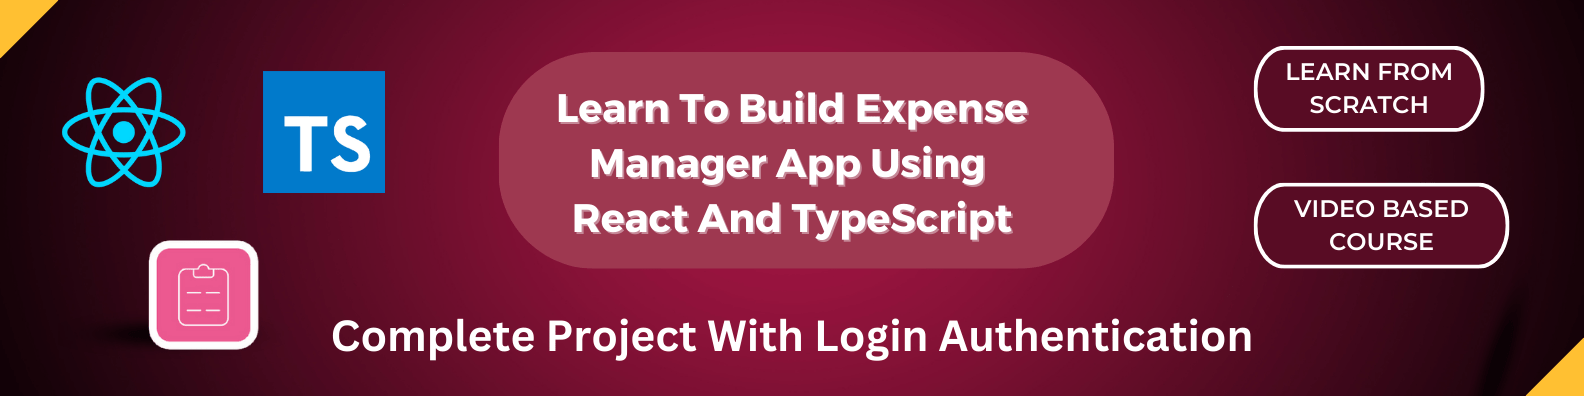 Aprende a Construir una Aplicación Administradora de Gastos Usando React y TypeScript